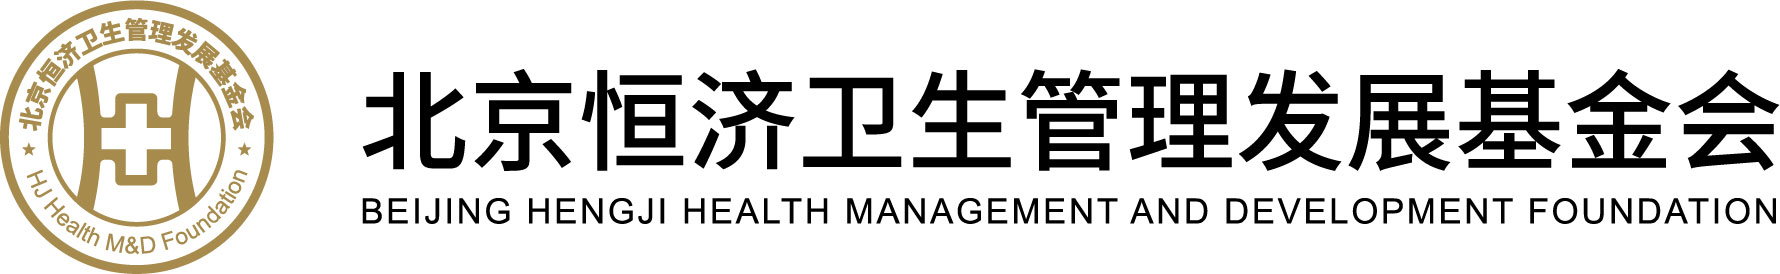 北京恒济卫生管理发展基金会